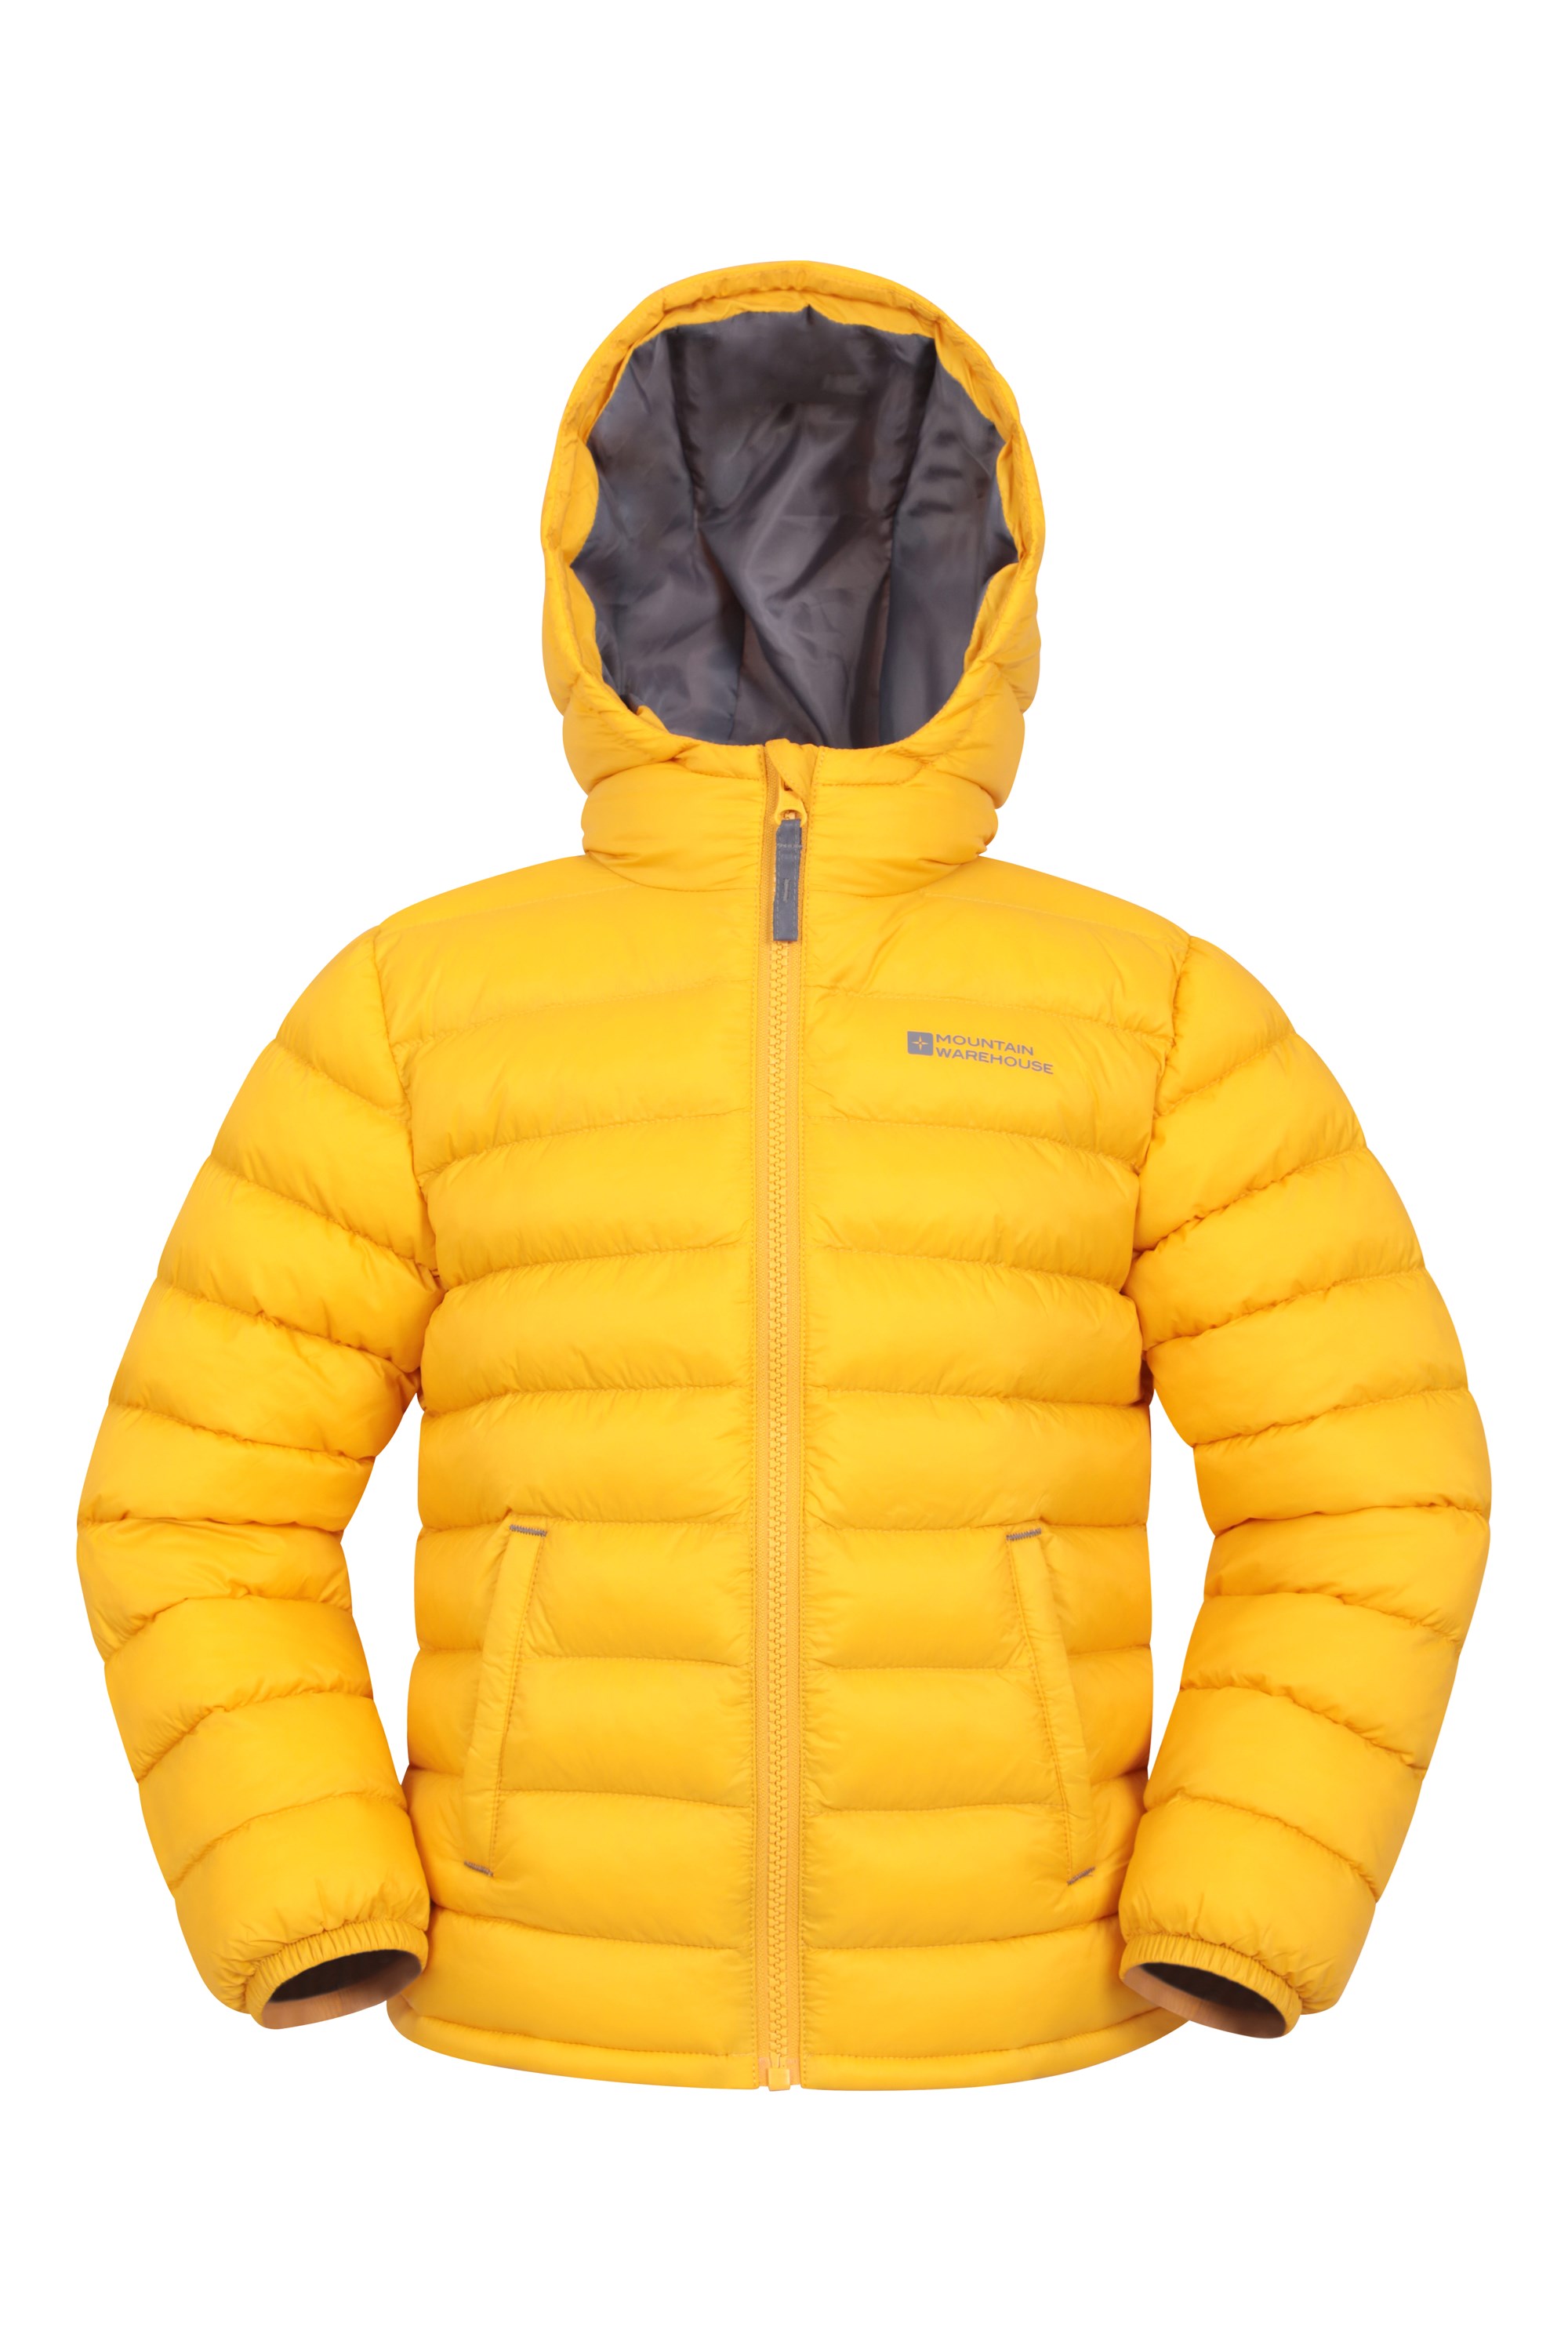 Winter Hiking Outfit Inspo! 🥾 @Mountain Warehouse #mountainwarehouse